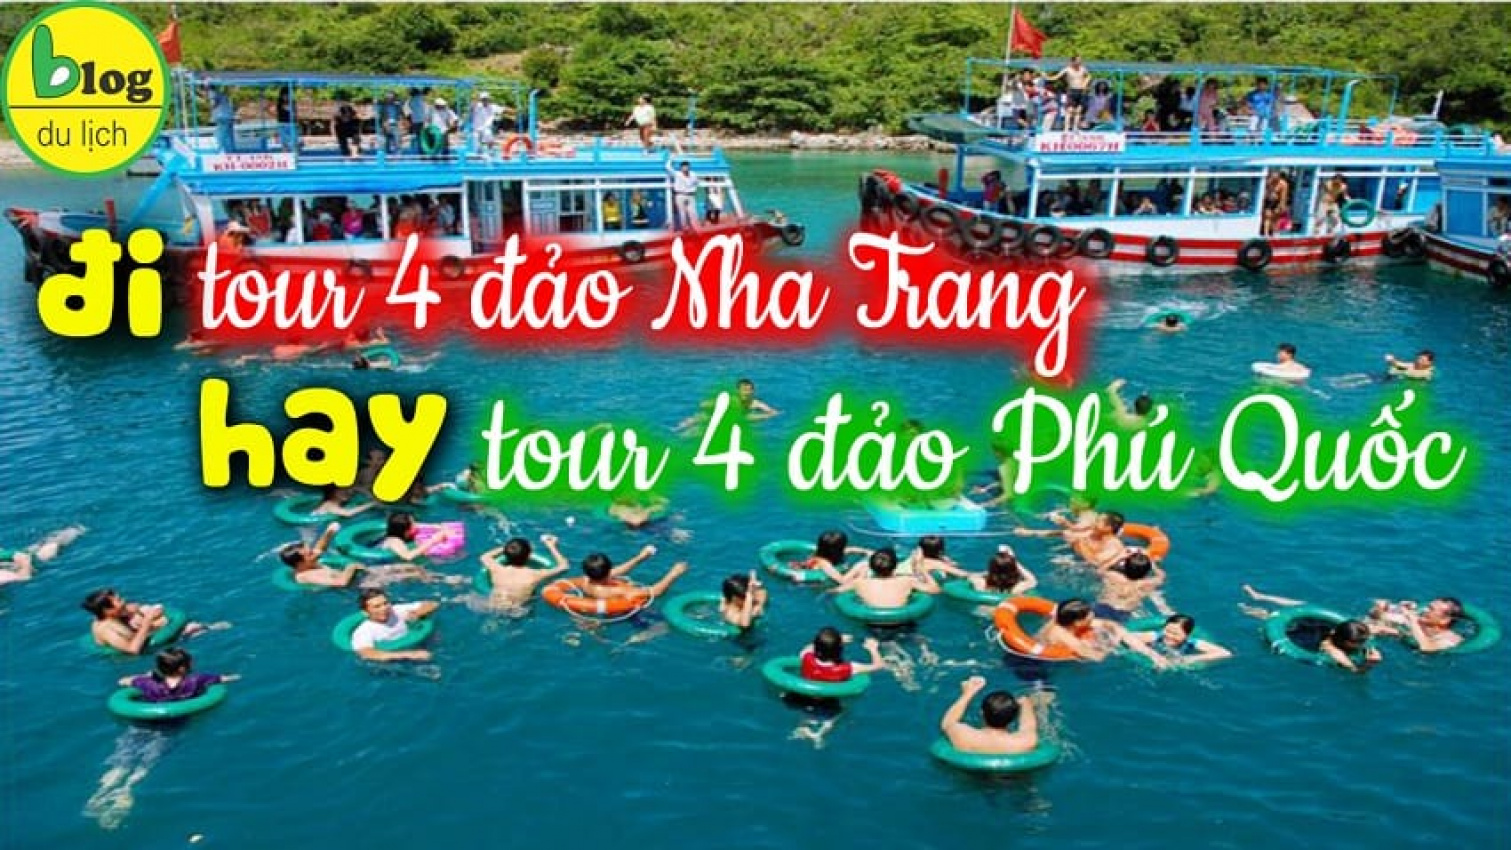 SO SÁNH Tour 4 đảo Nha Trang hay tour 4 đảo Phú Quốc hấp dẫn hơn?